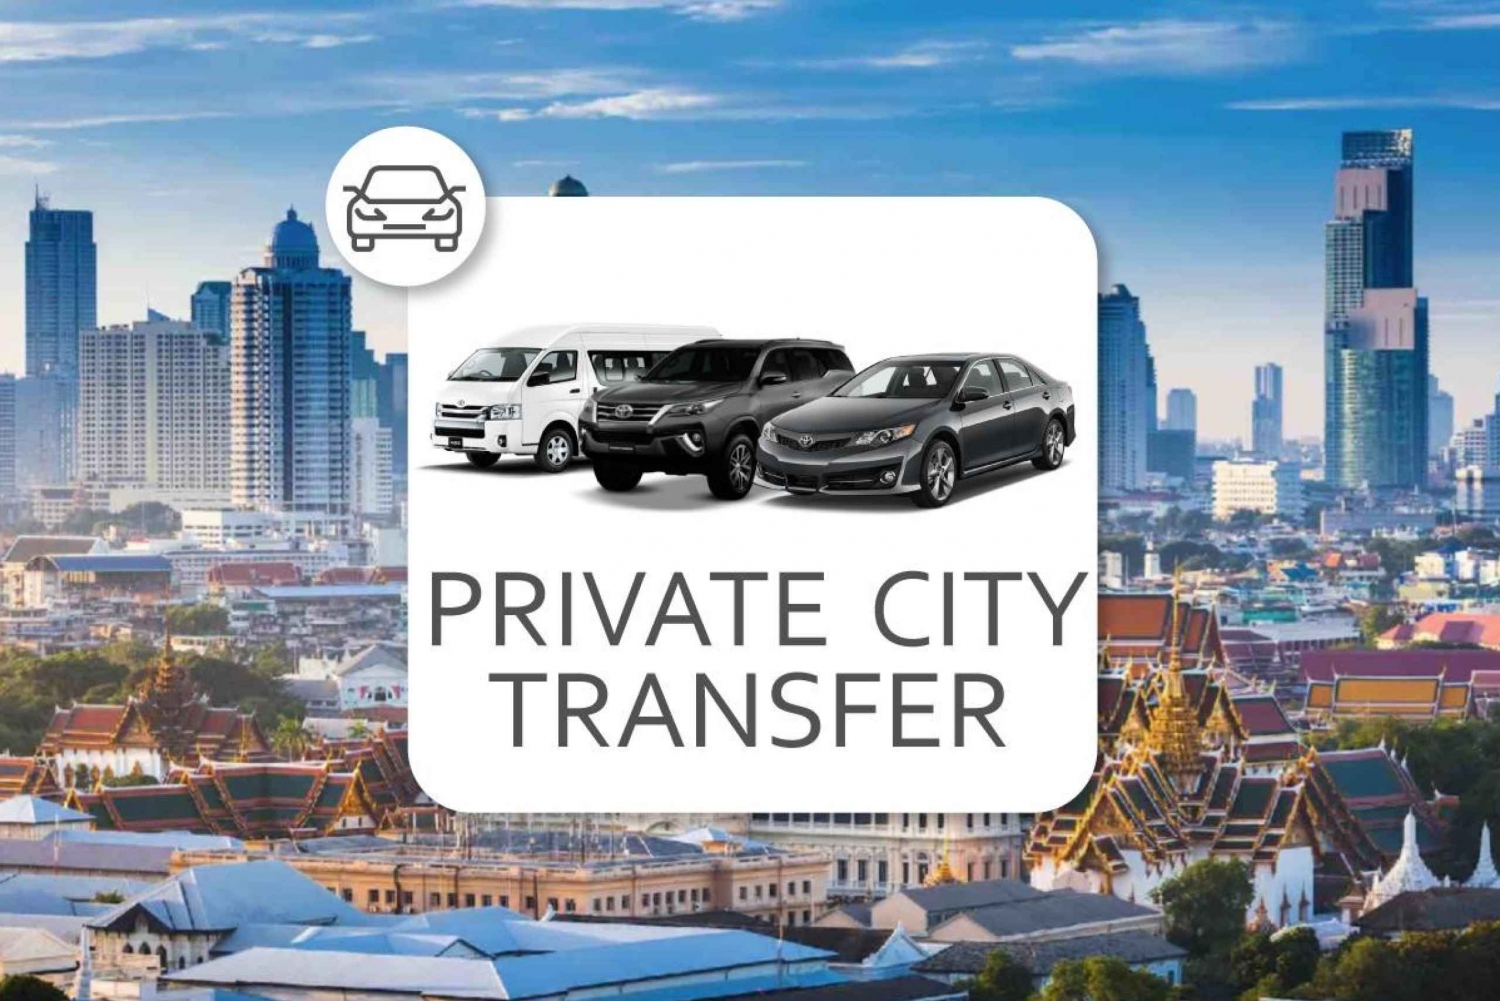 Bangkok: Private City Transfer between Bangkok and Nearby